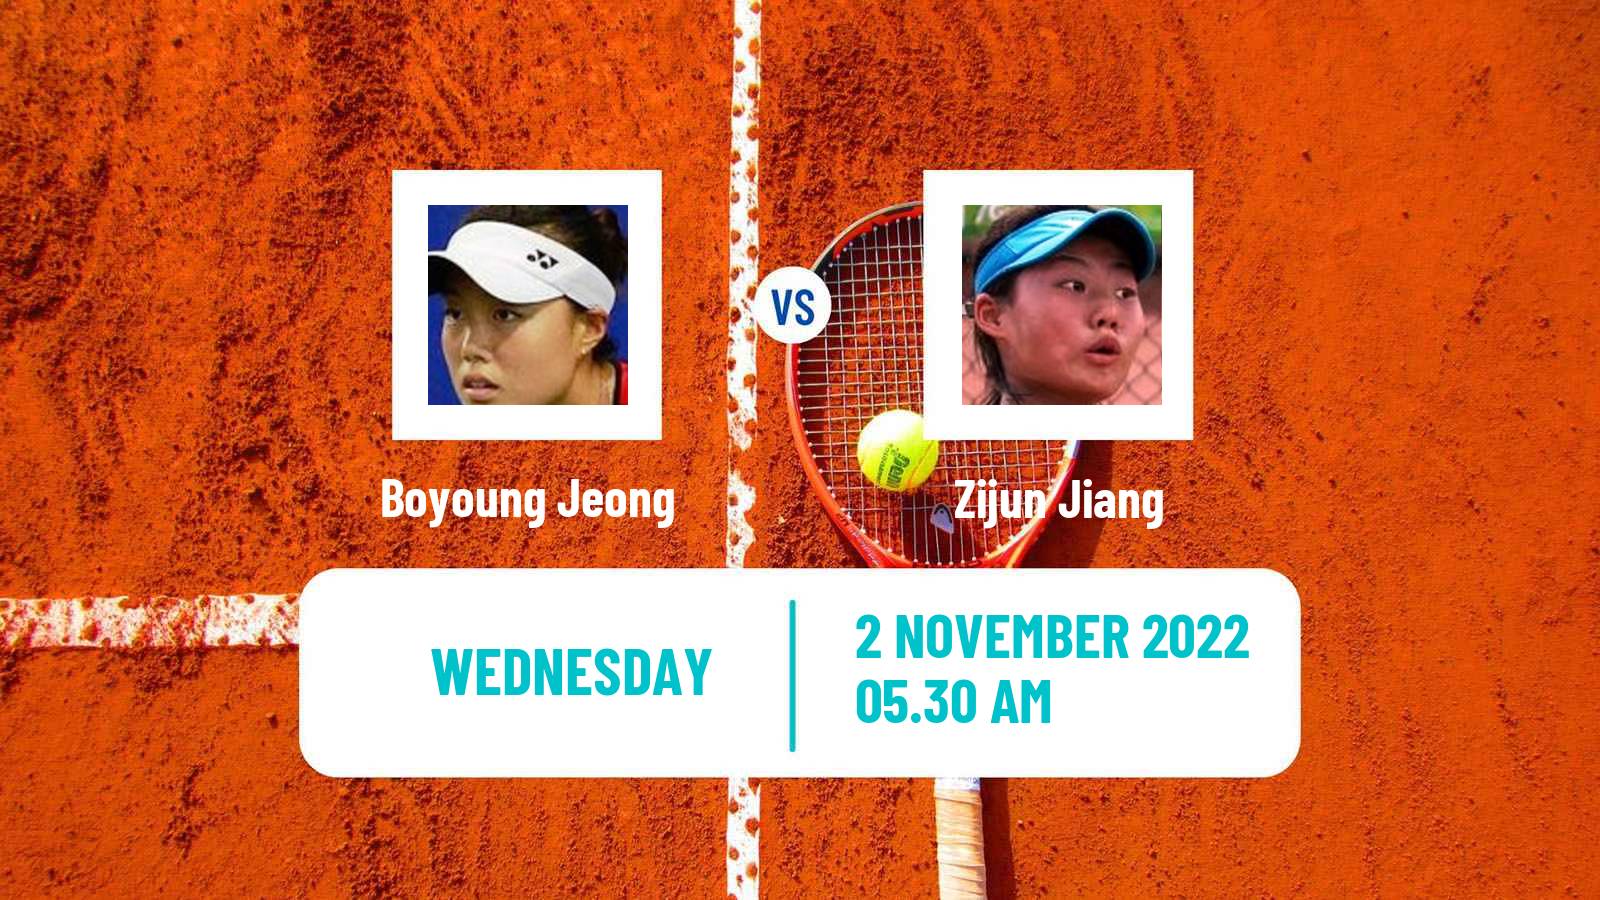 Tennis ITF Tournaments Boyoung Jeong - Zijun Jiang